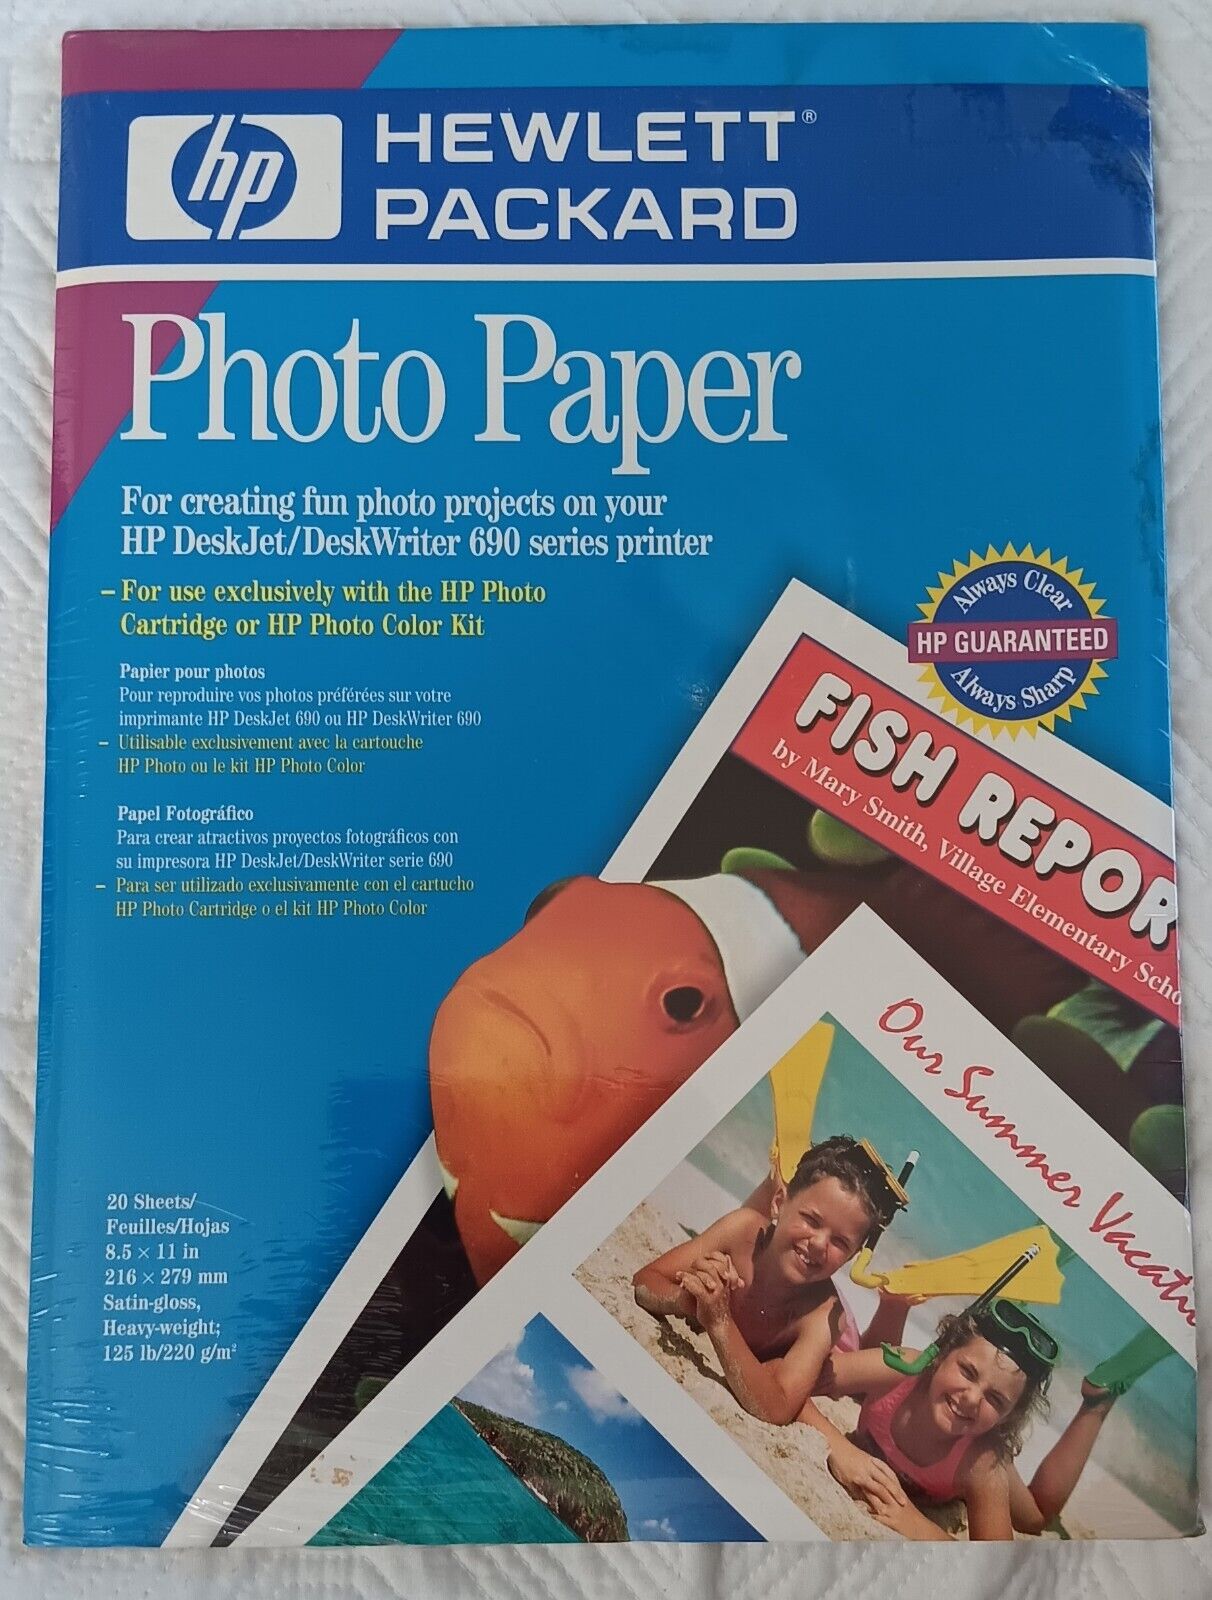 NEW-HEWLETT PACKARD-HP PHOTO PAPER-20 SHEETS-8.5 X 11